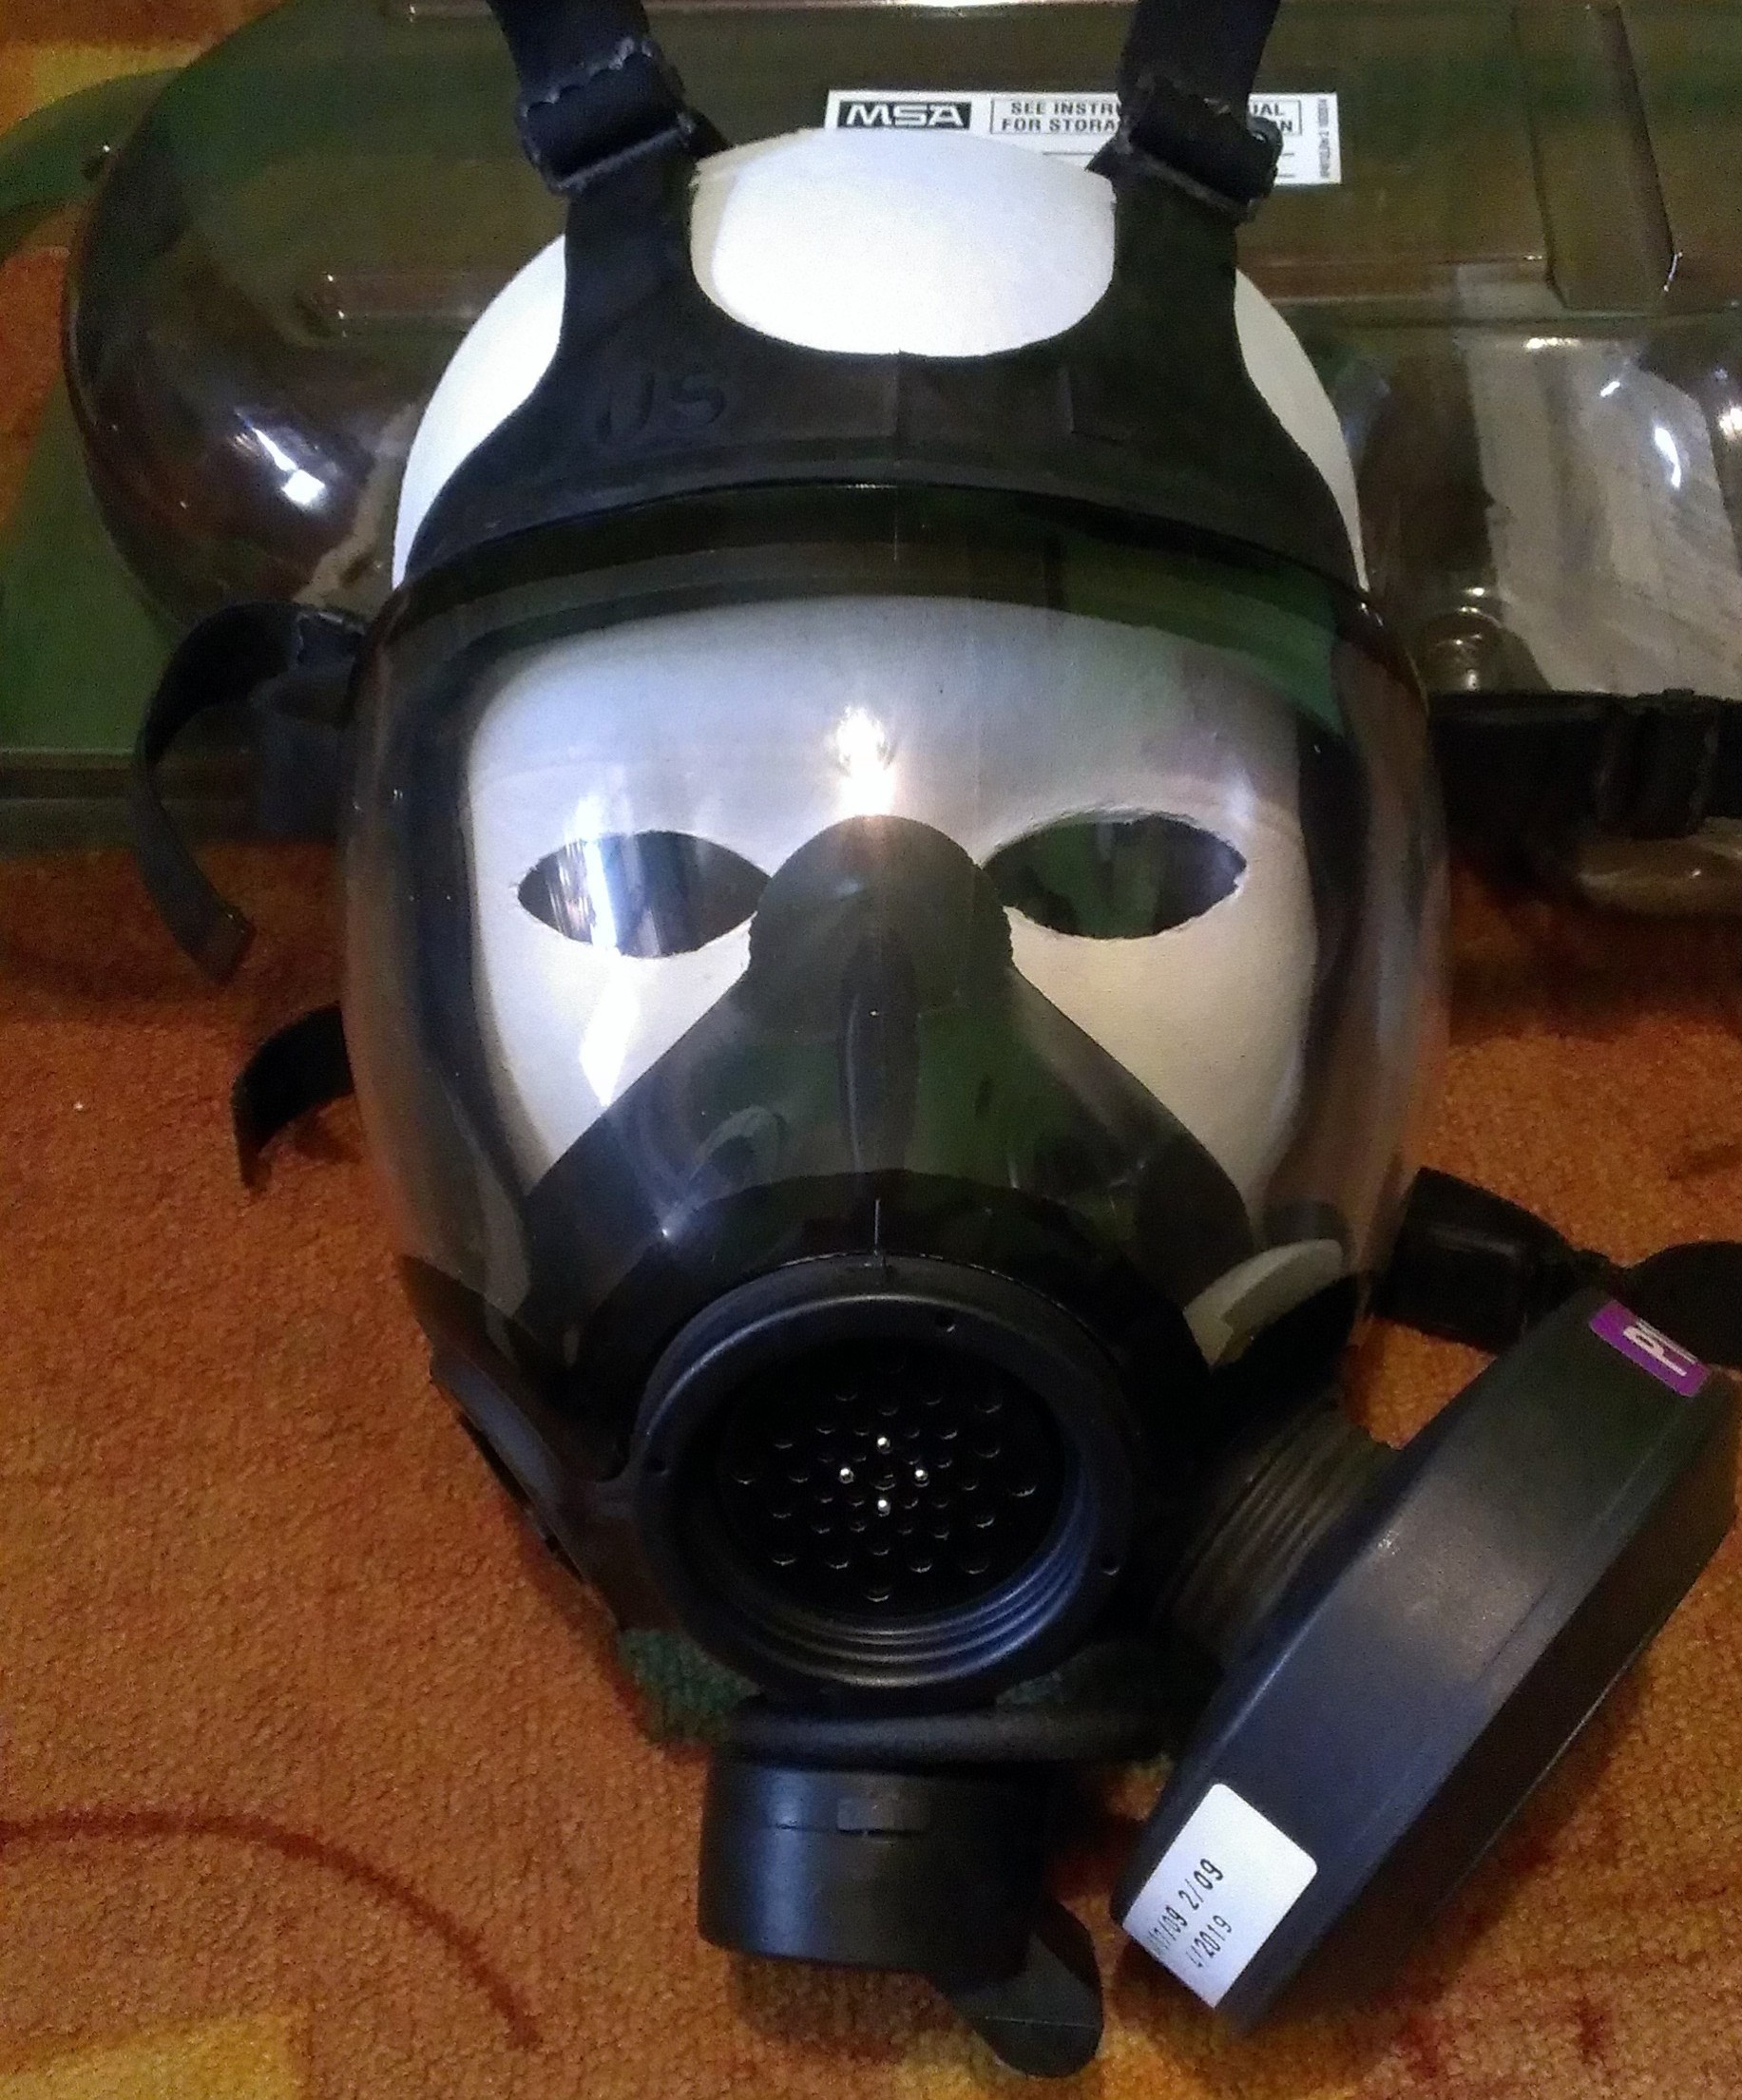 Masque à gaz — Wikipédia